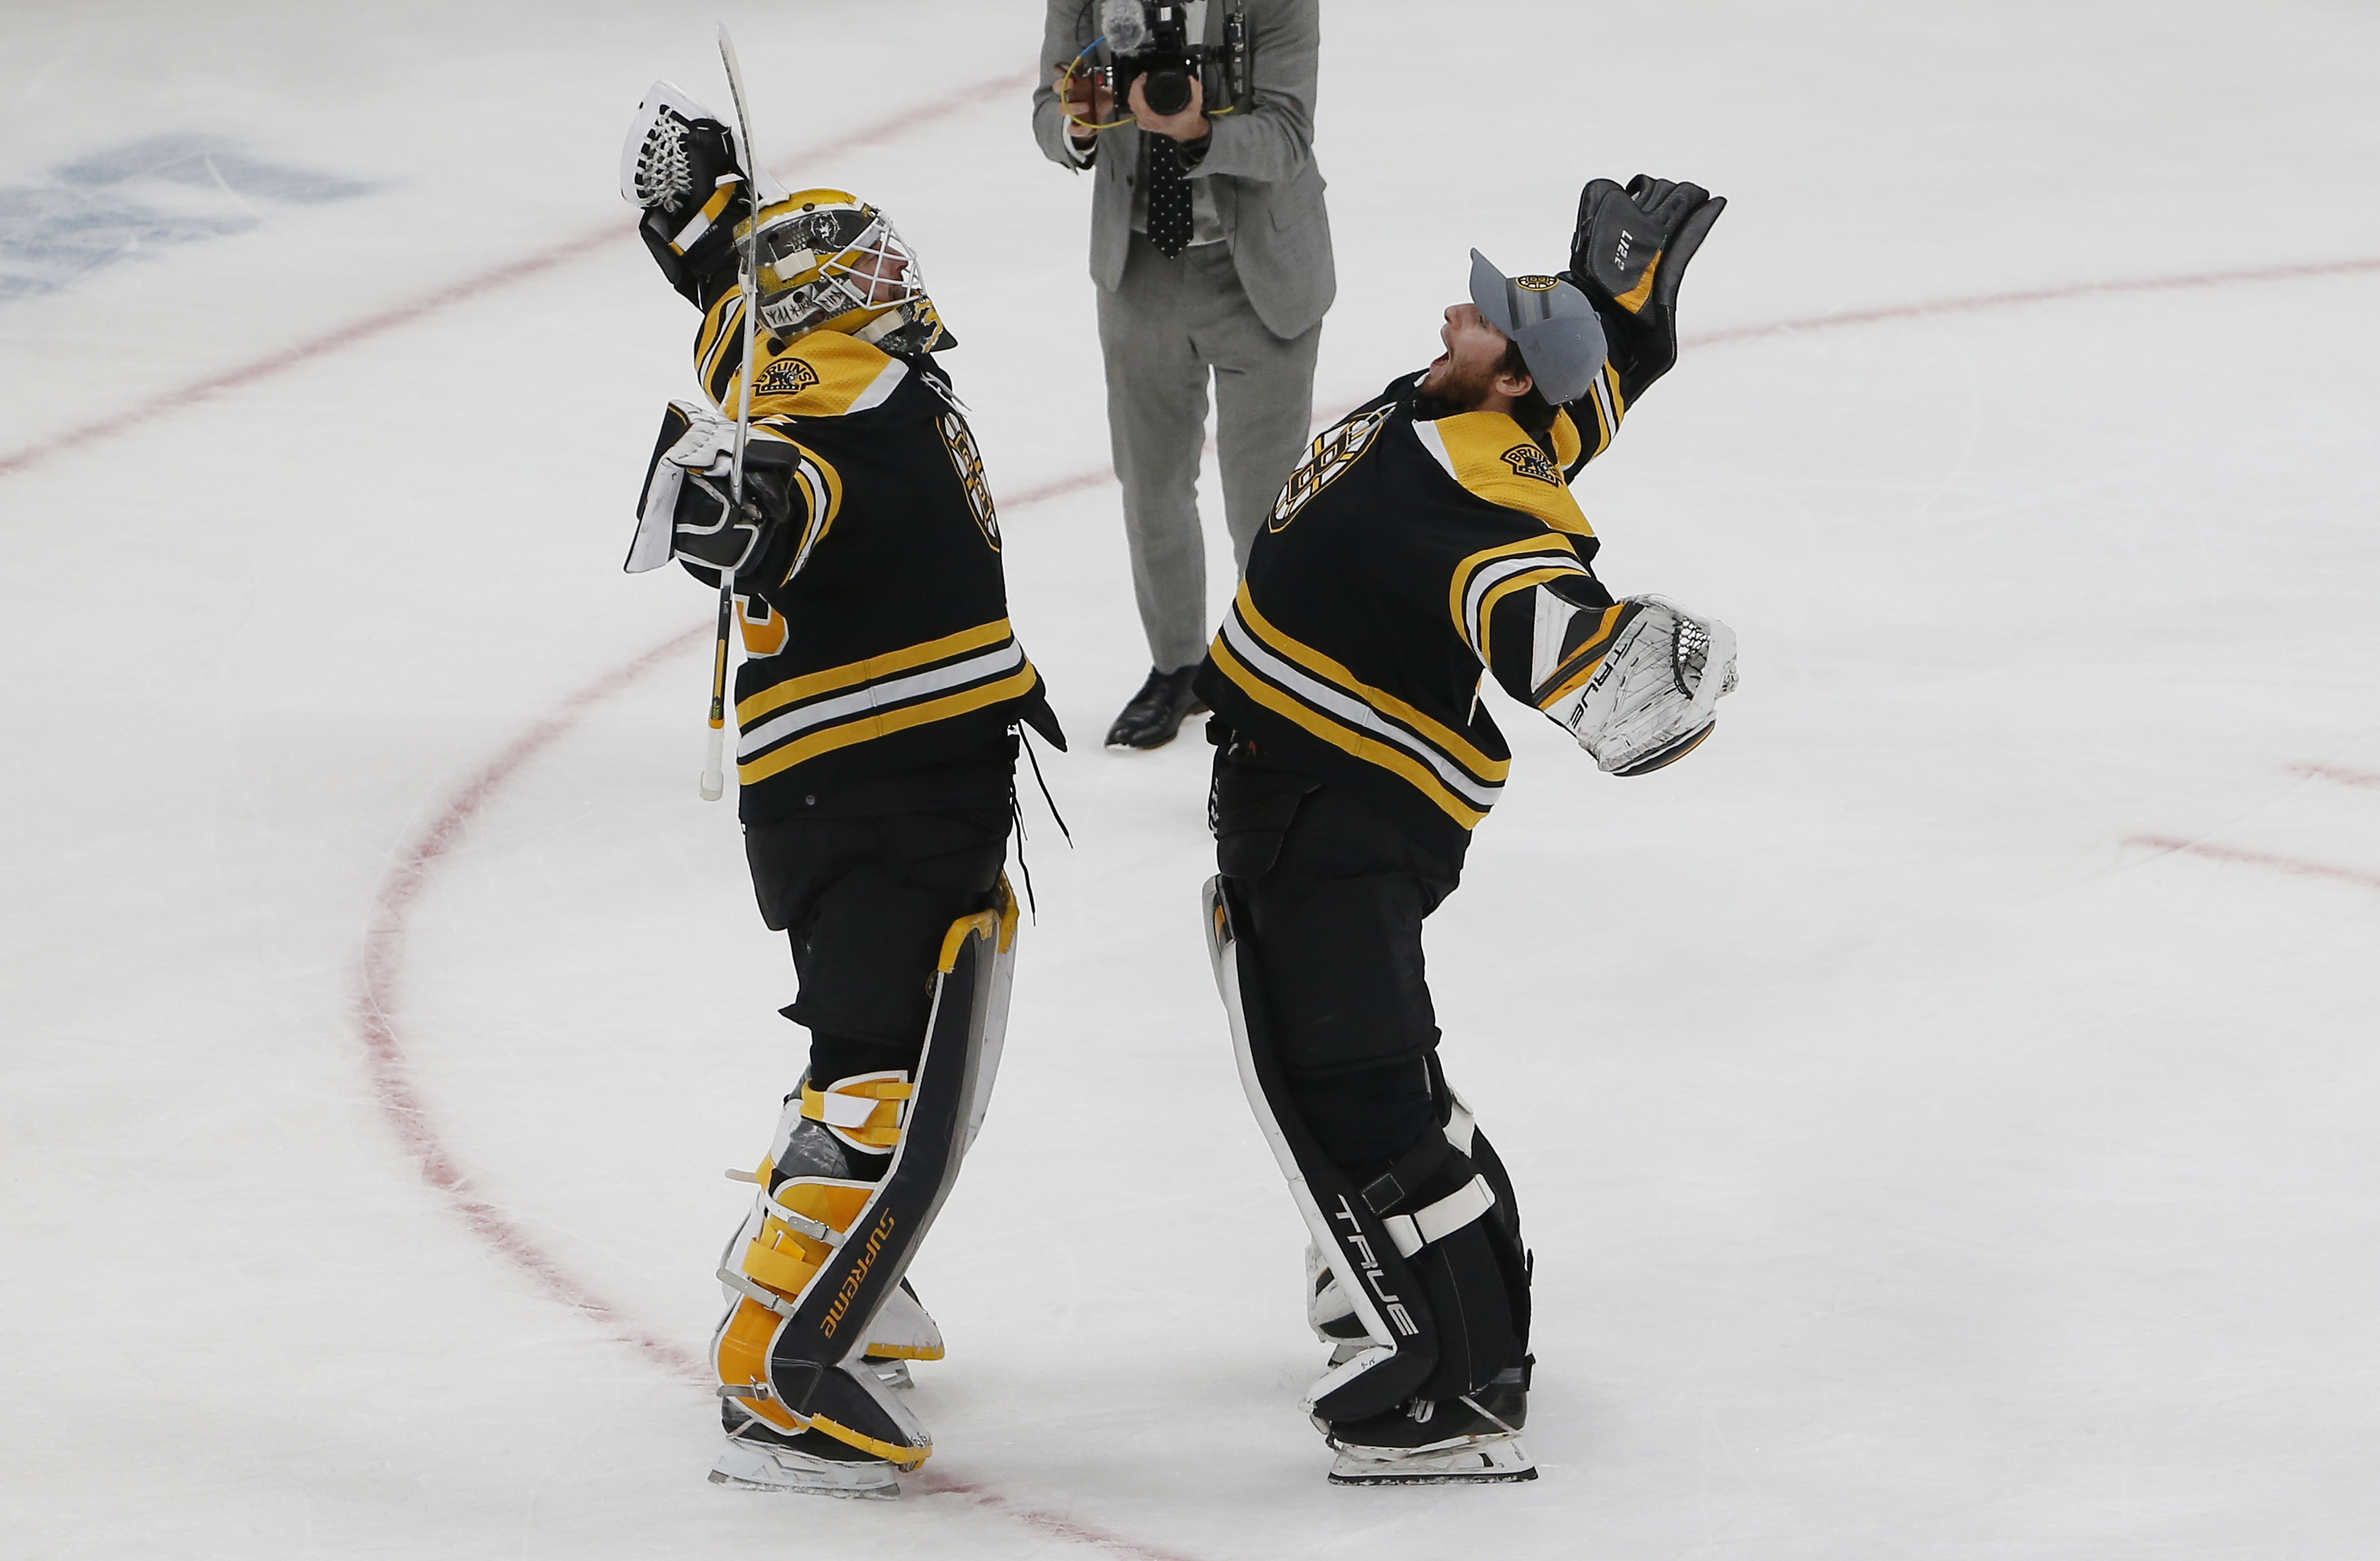 Bruins' Tuukka Rask Voted Top Franchise Goalie In ESPN NHL Player